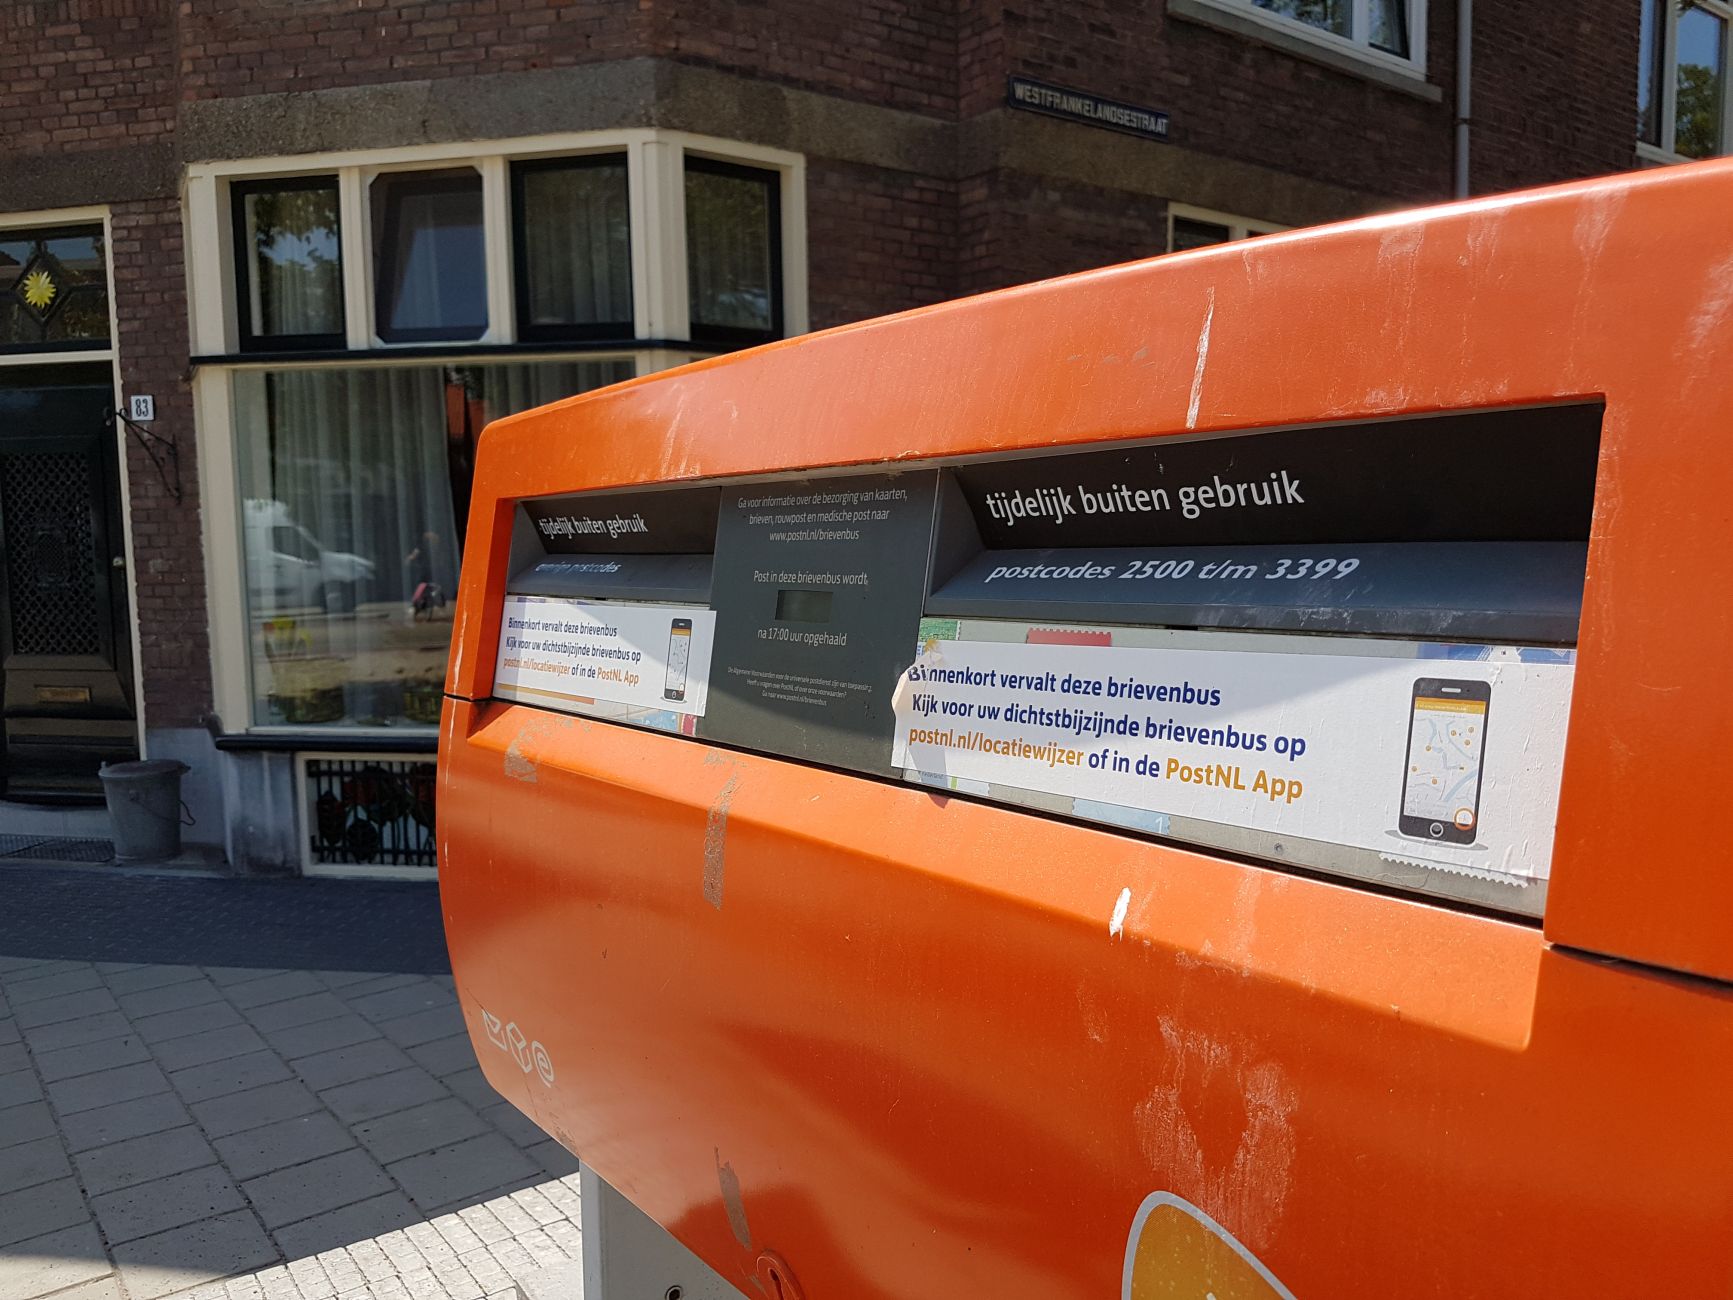 Brievenbus post nl